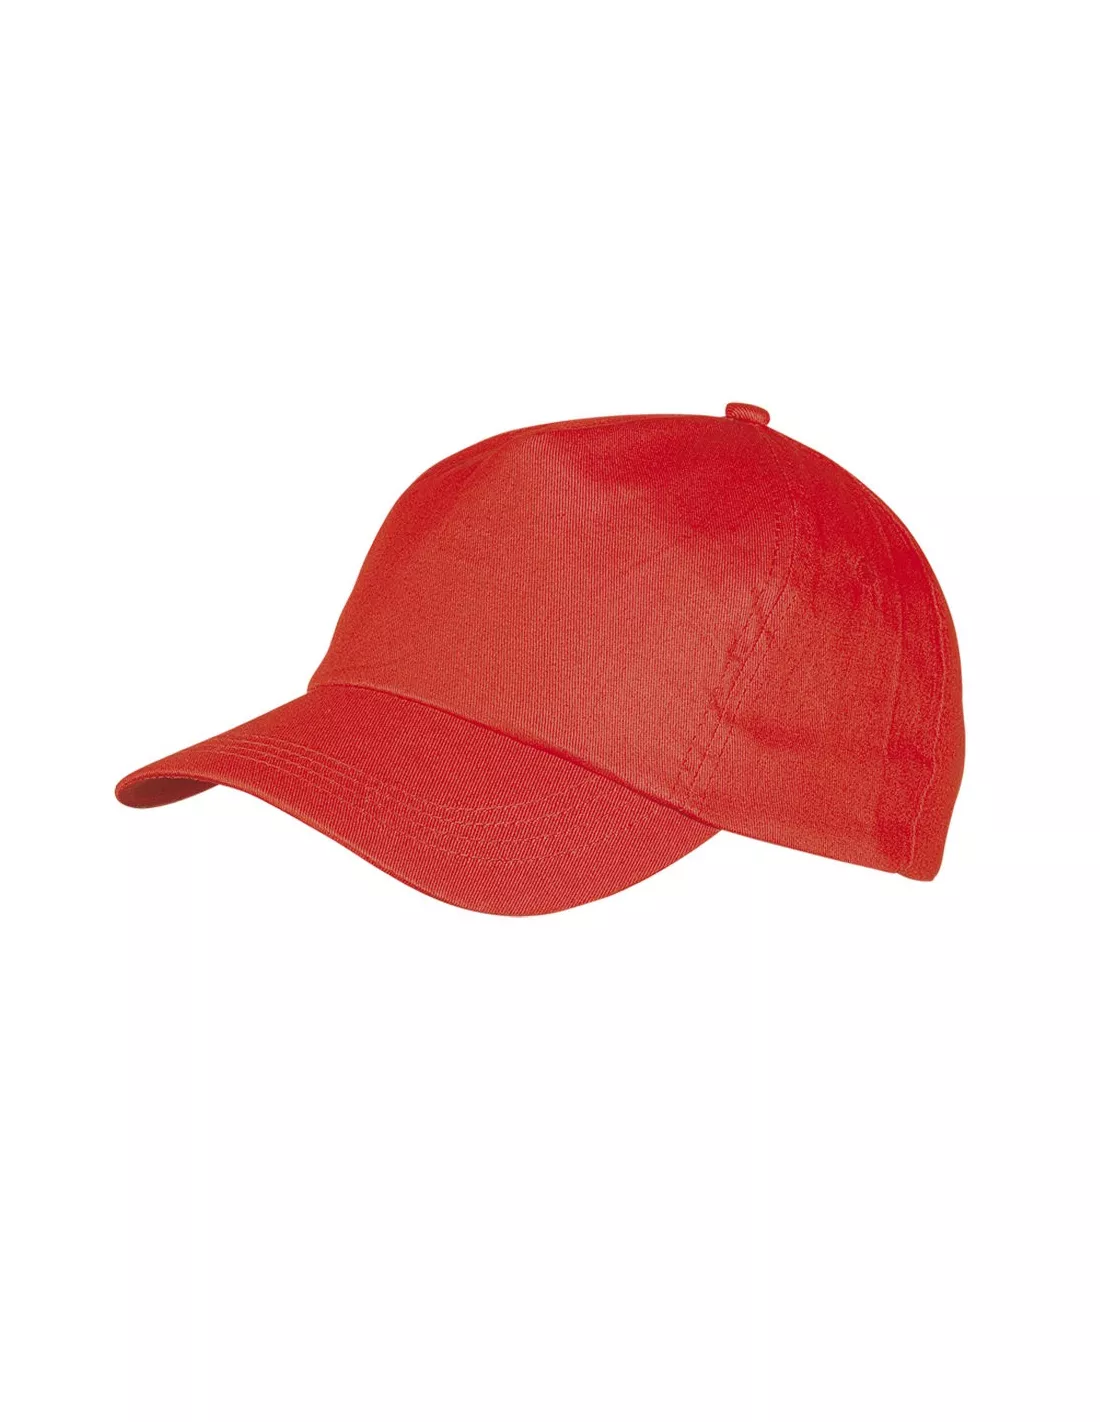 gorras deportivas personalizadas en madrid